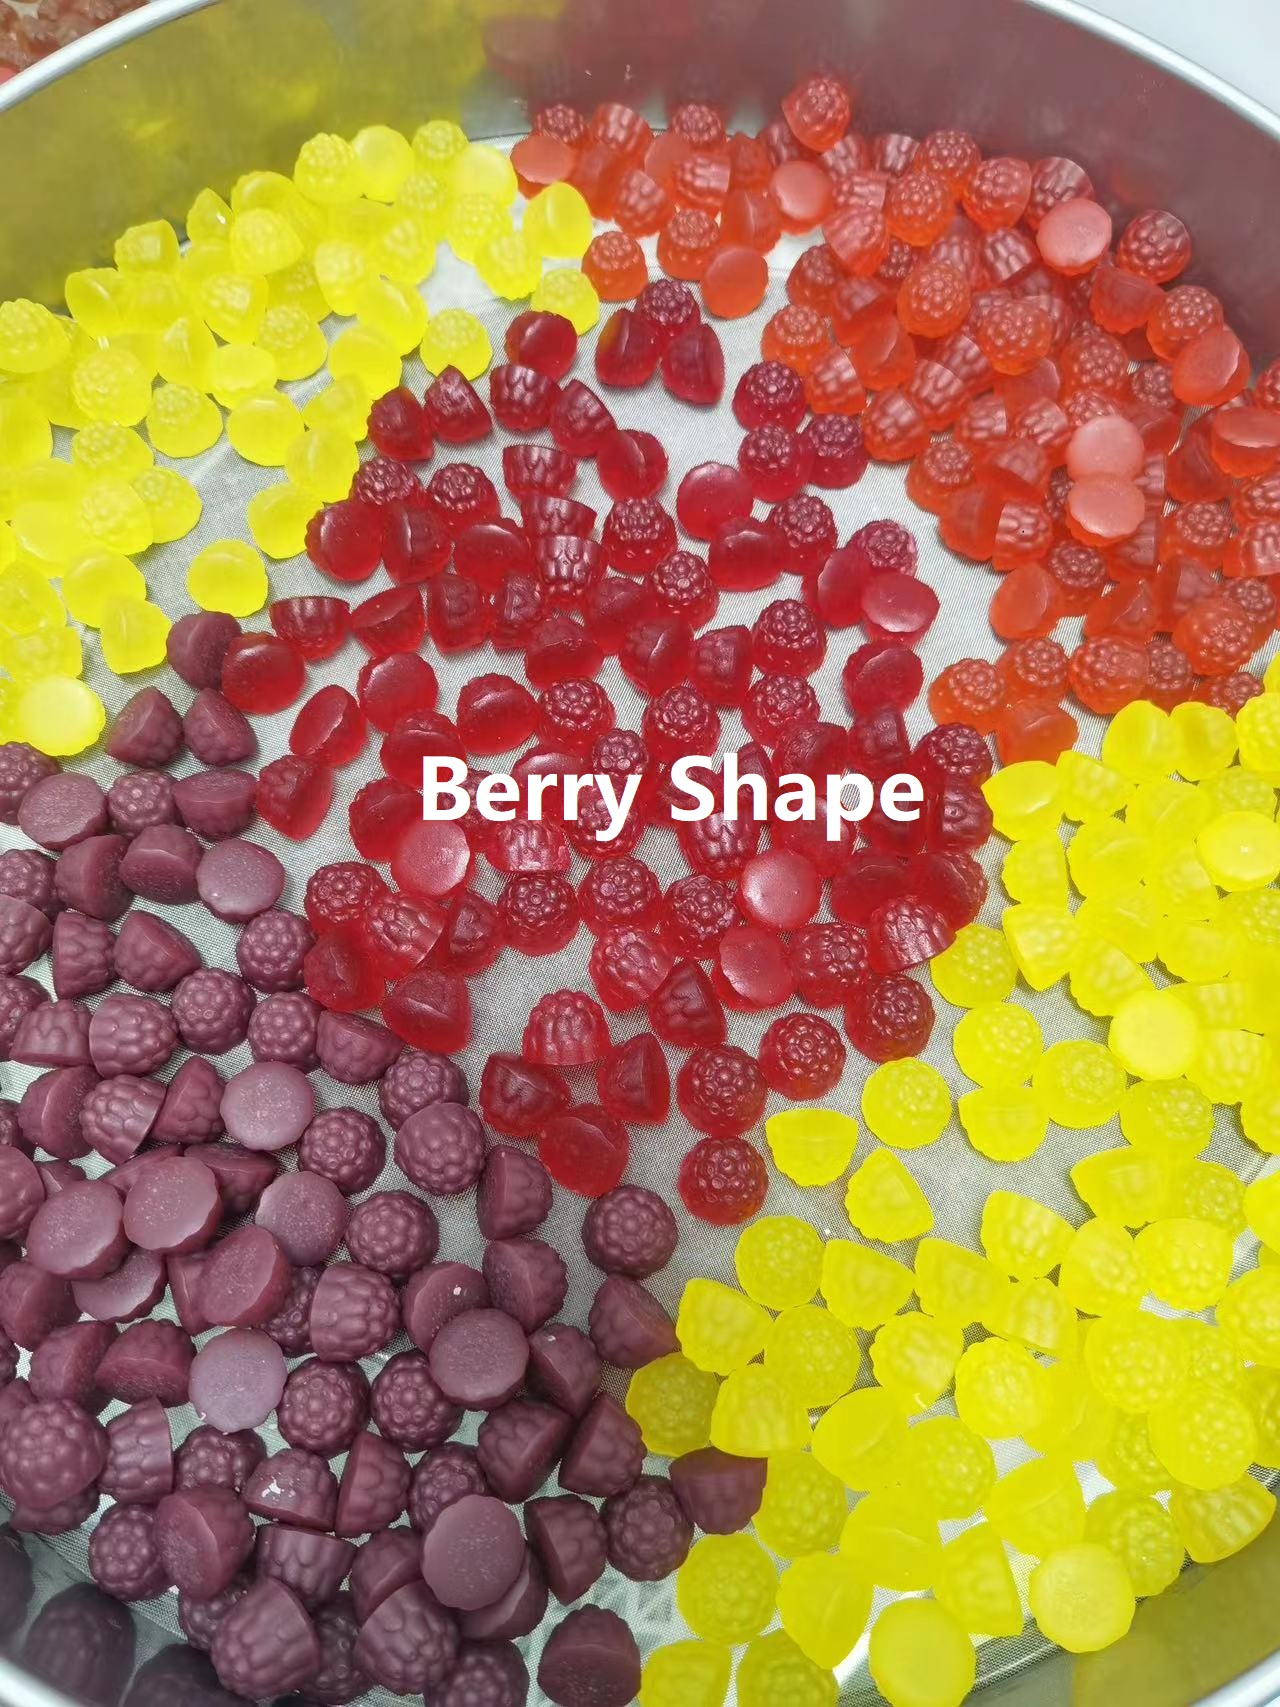 Коллагеновые жевательные конфеты под собственной торговой маркой: инновация, улучшающая красоту